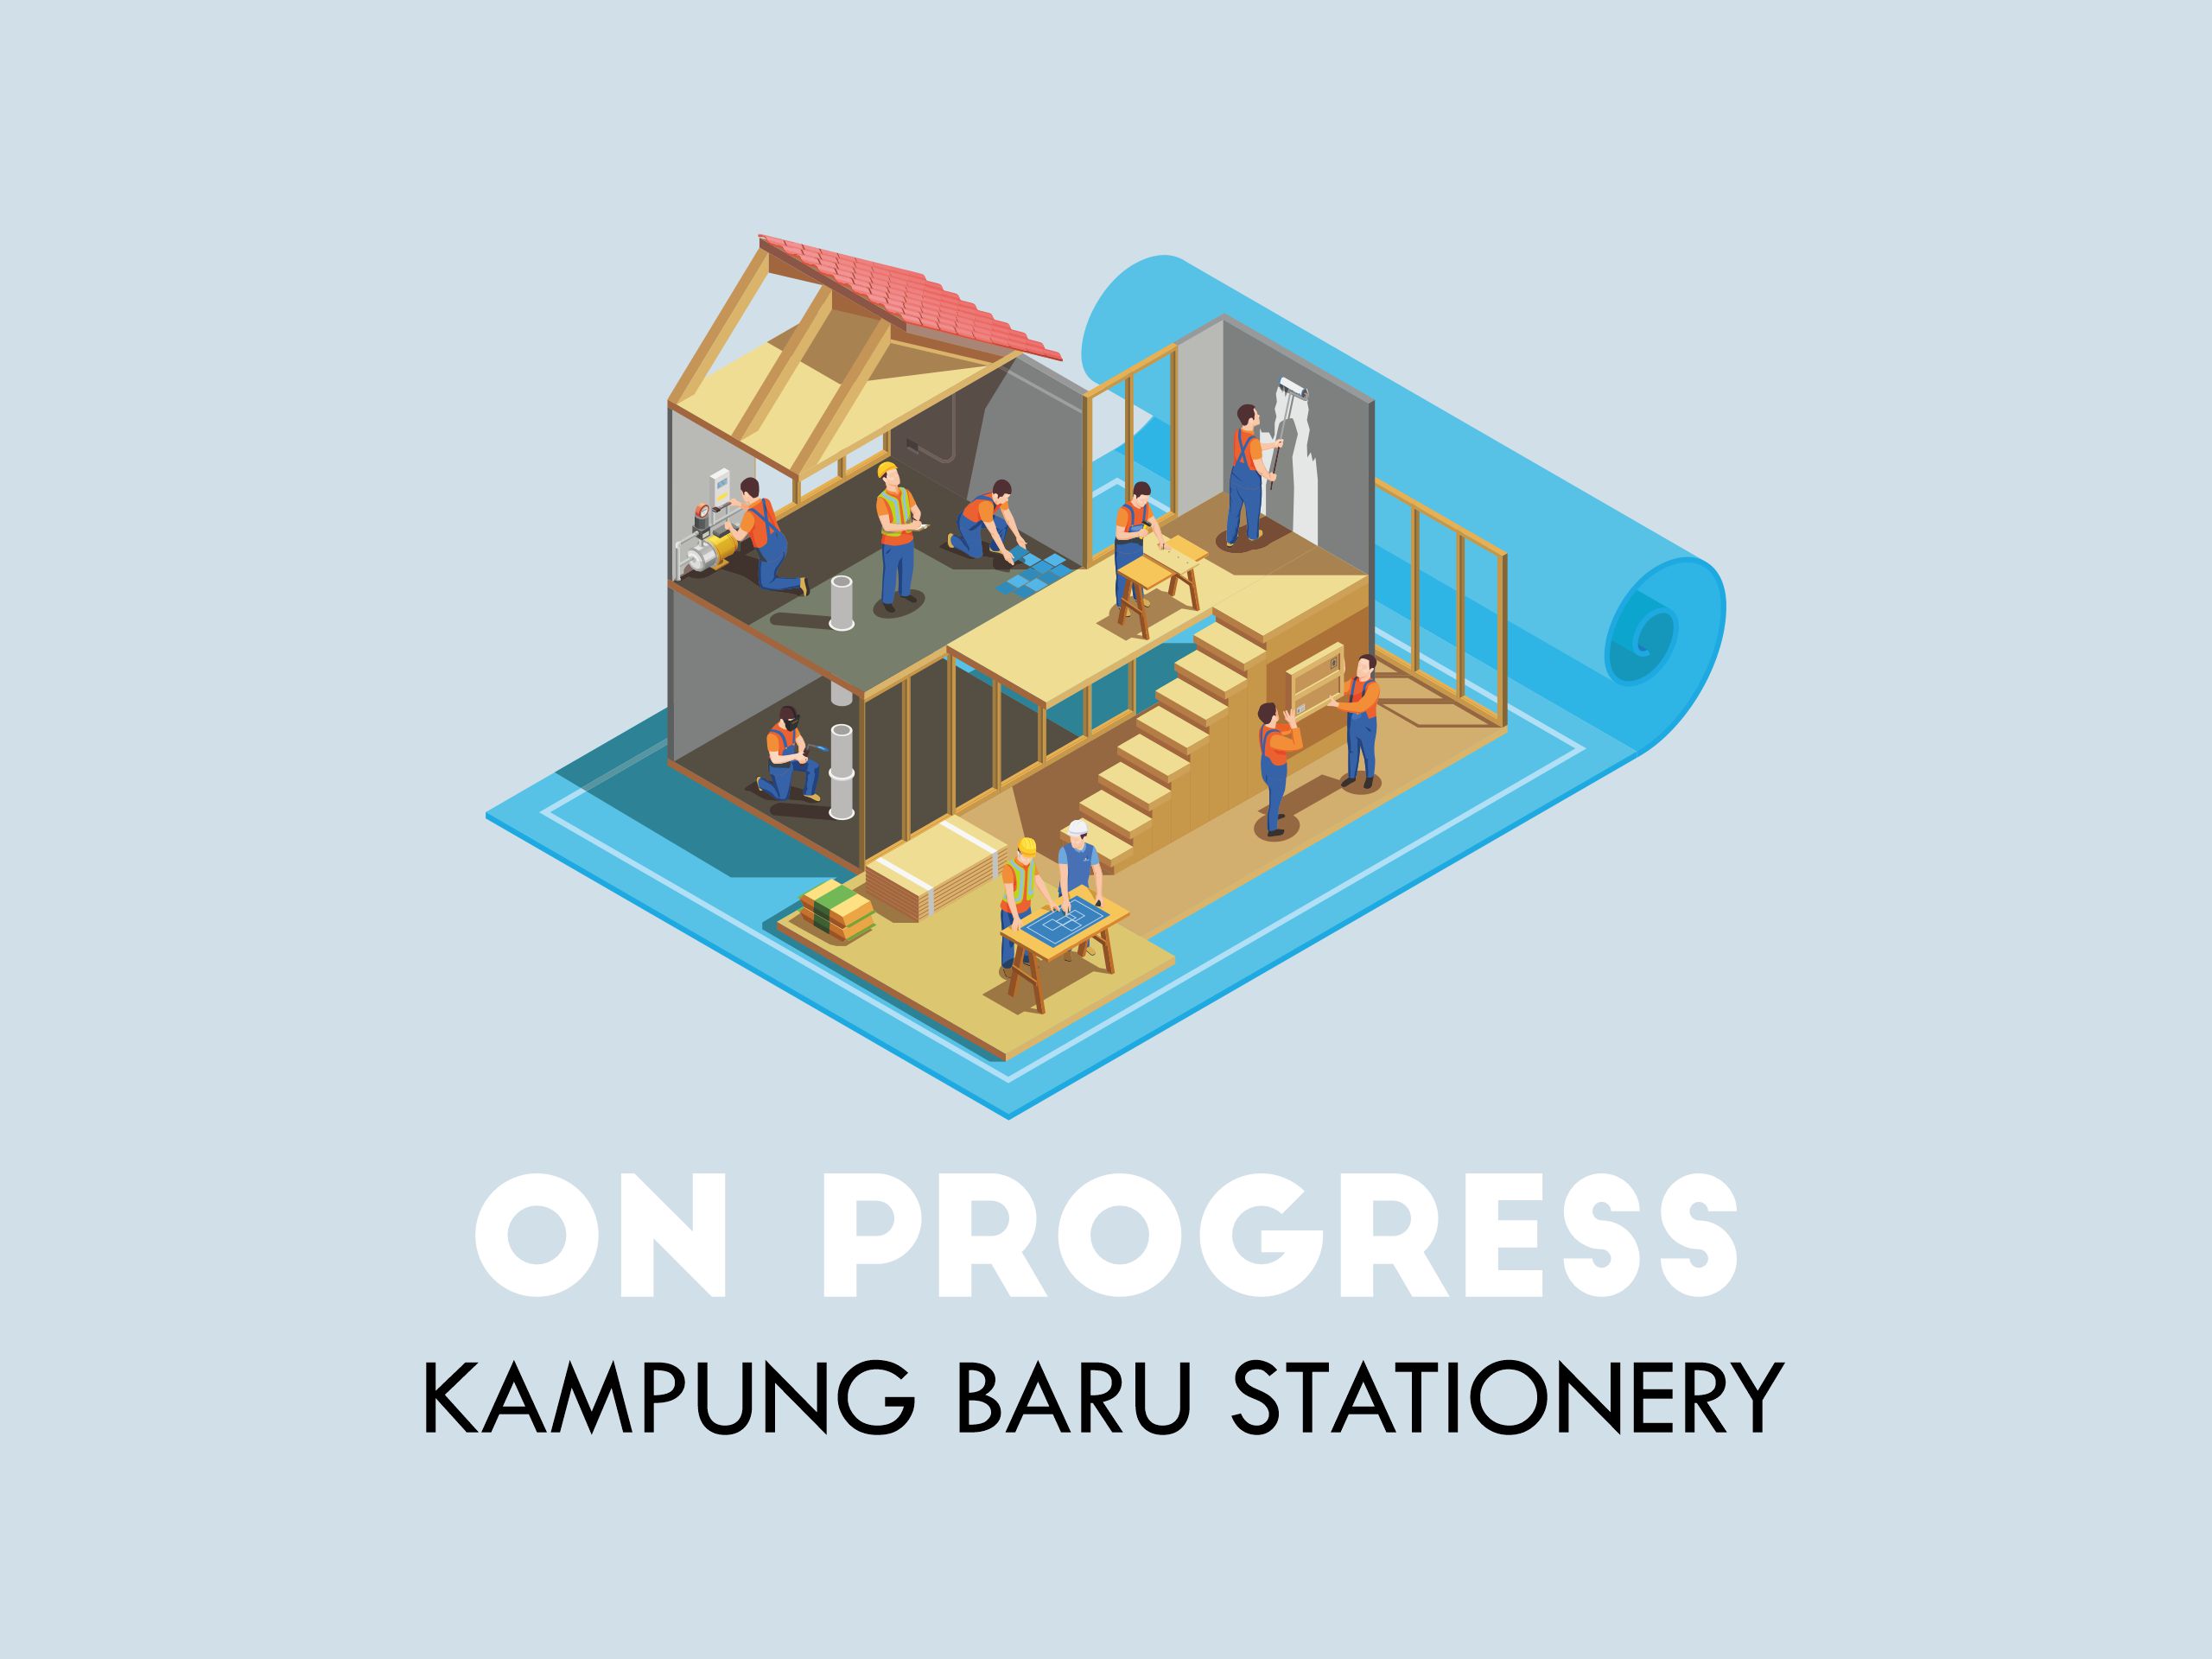 On Progress: Kampung Baru Stationery